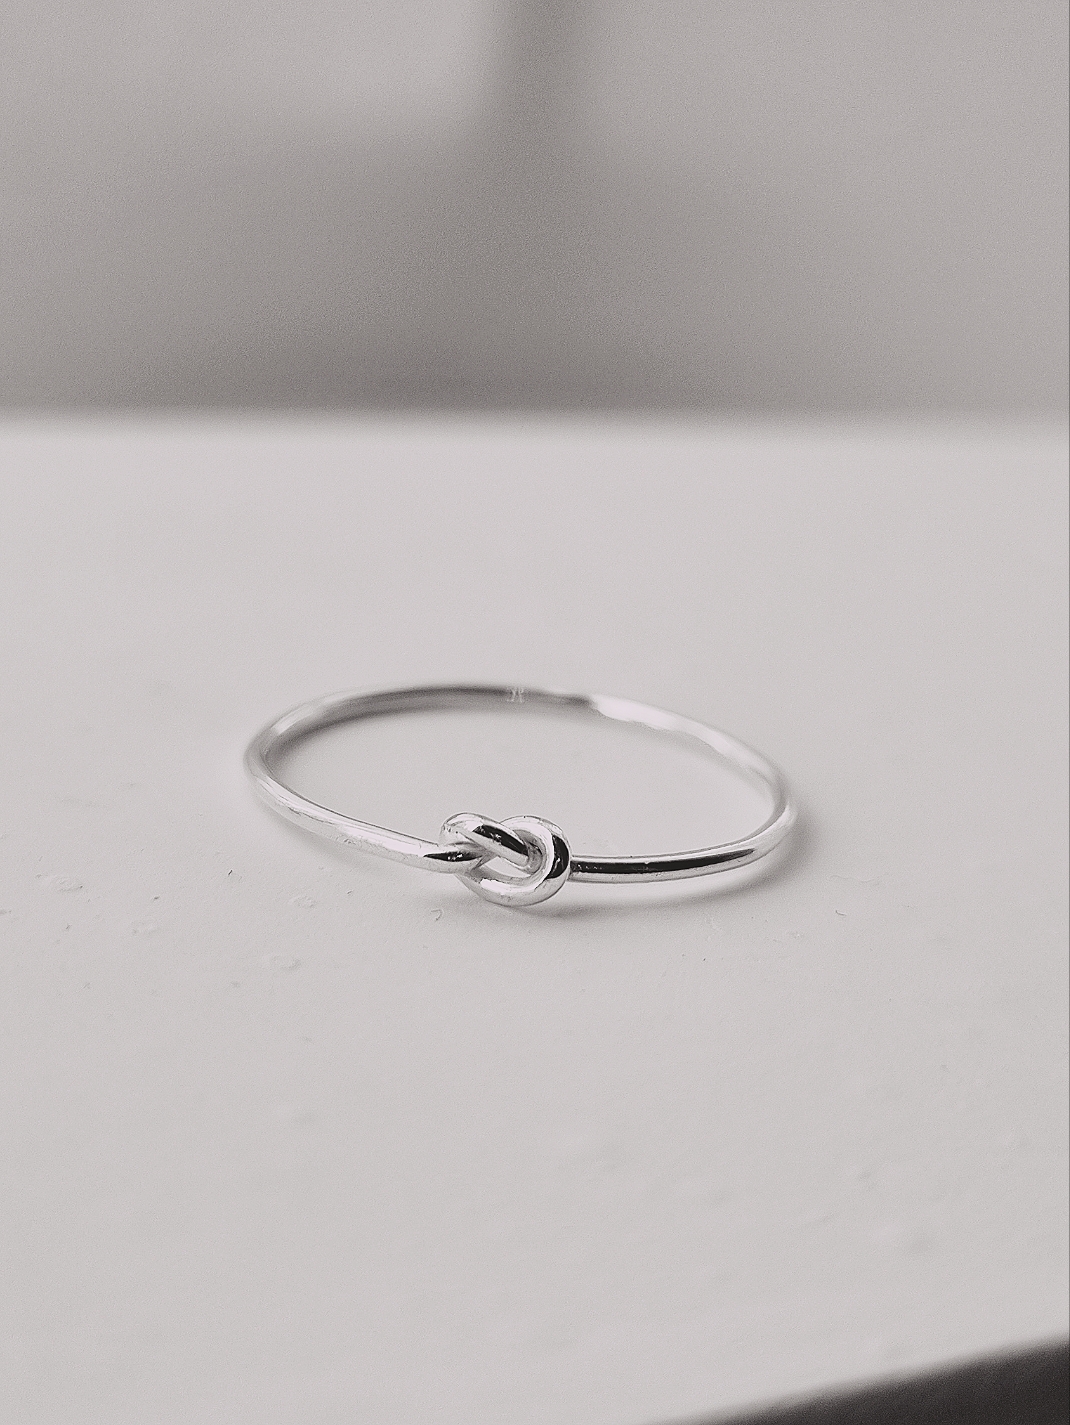 Här är en ring i silver. Det är en rund tråd som är 1 mm tjock. Ovansidan av ringen består av en enkel knut. Knuten är lätt åtdragen. Polerat silver.